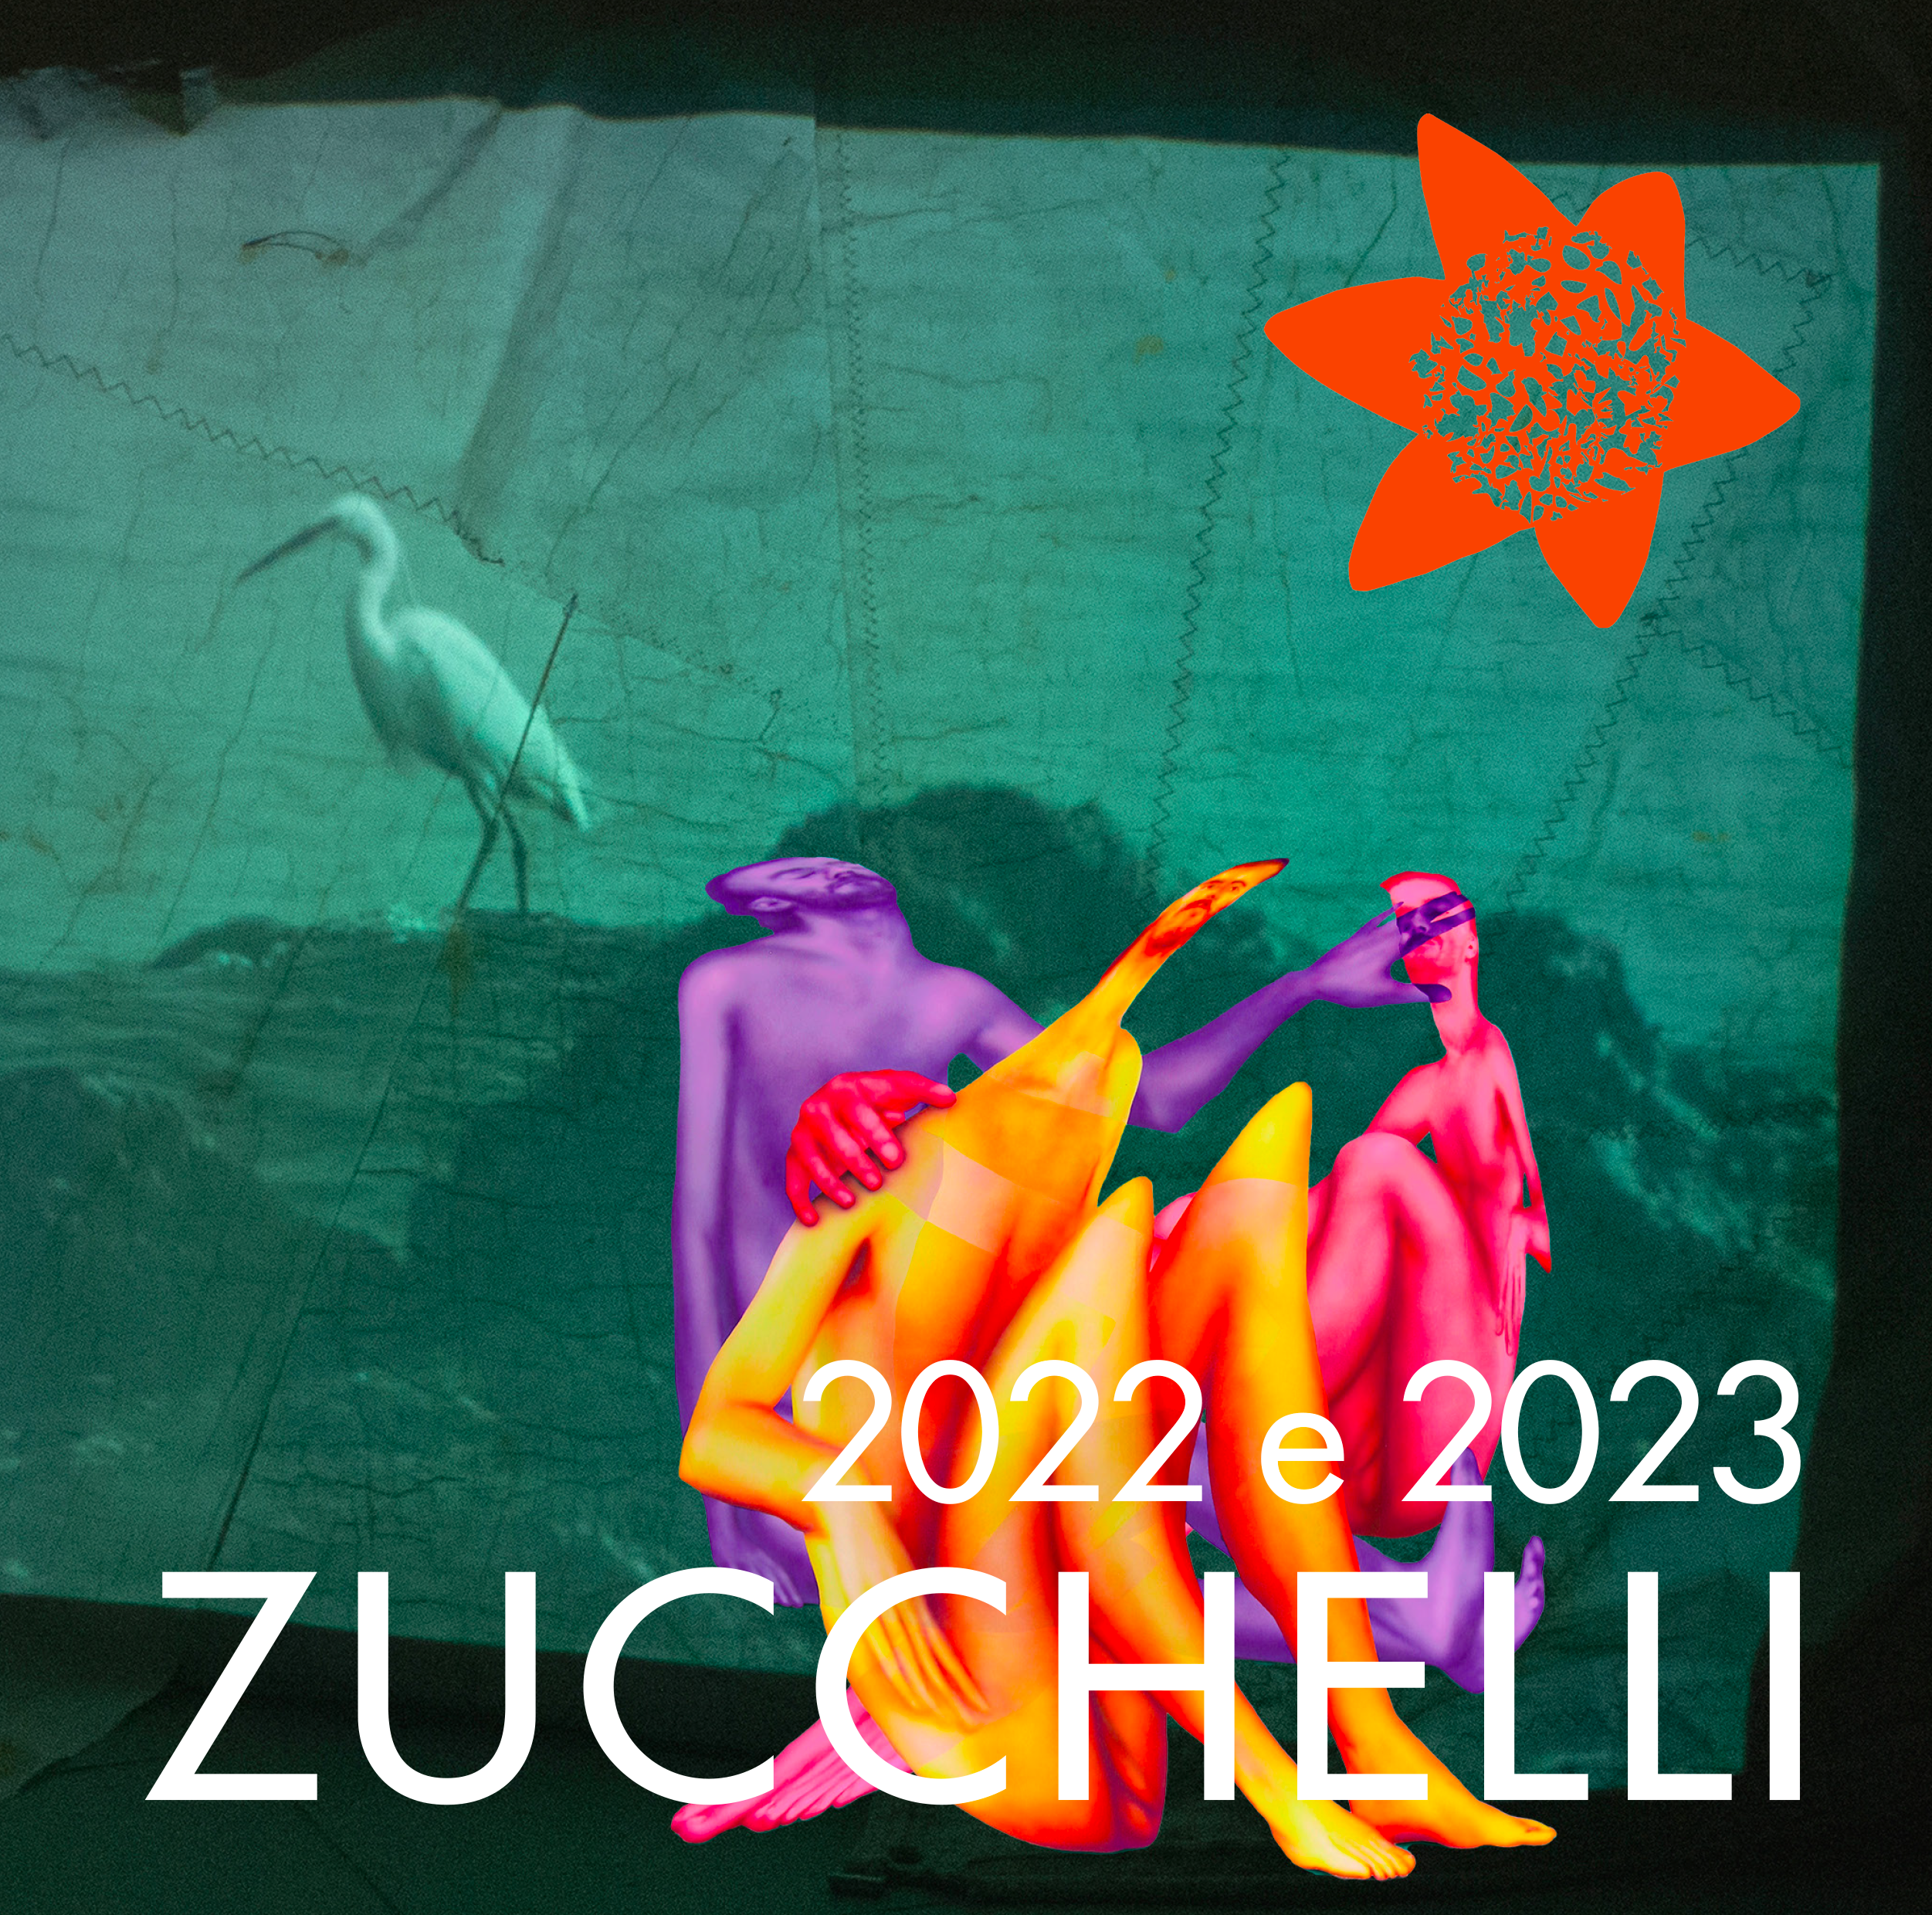 PER SITO Copertina Catalogo Fondazione Zucchelli 2022 e 2023